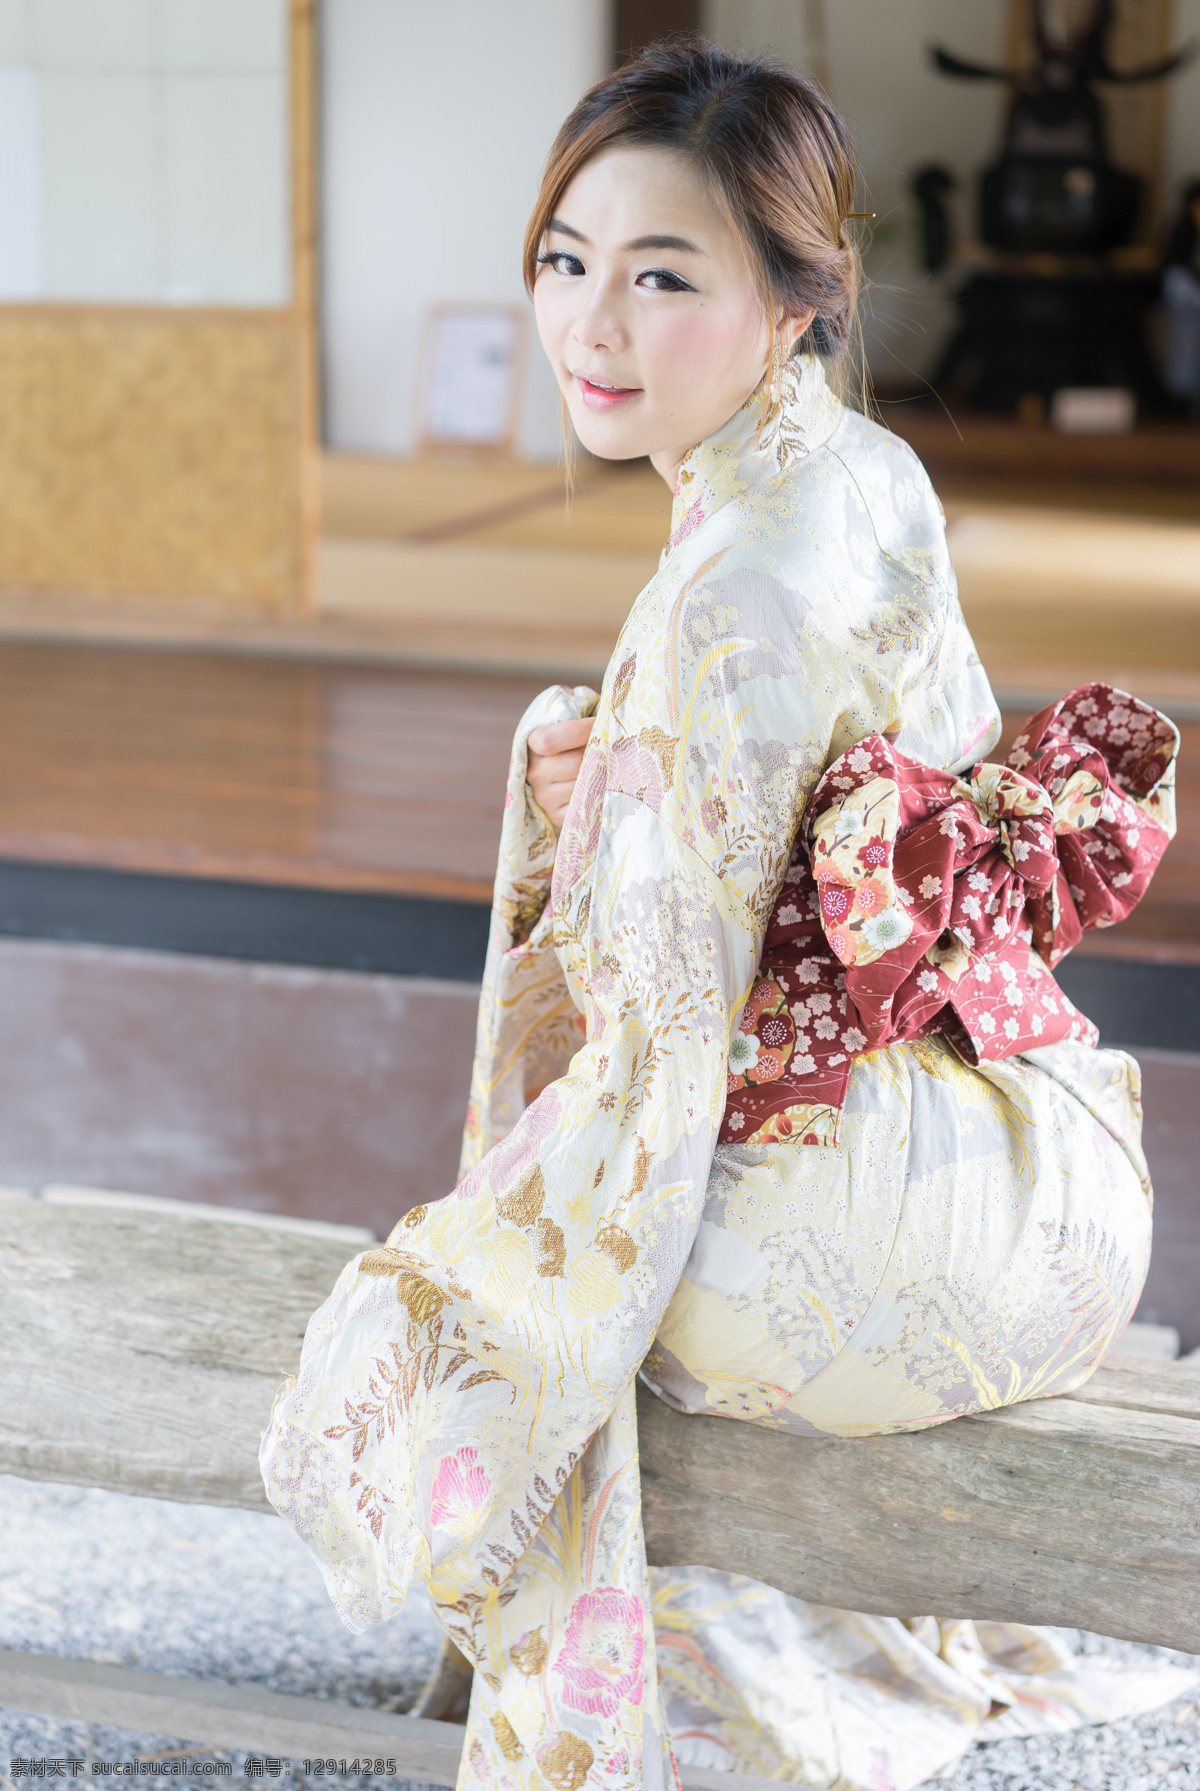 穿 和服 日本美女 和服女孩 外国女人 美丽女人 美女模特 美女写真 美女摄影 美女图片 人物图片